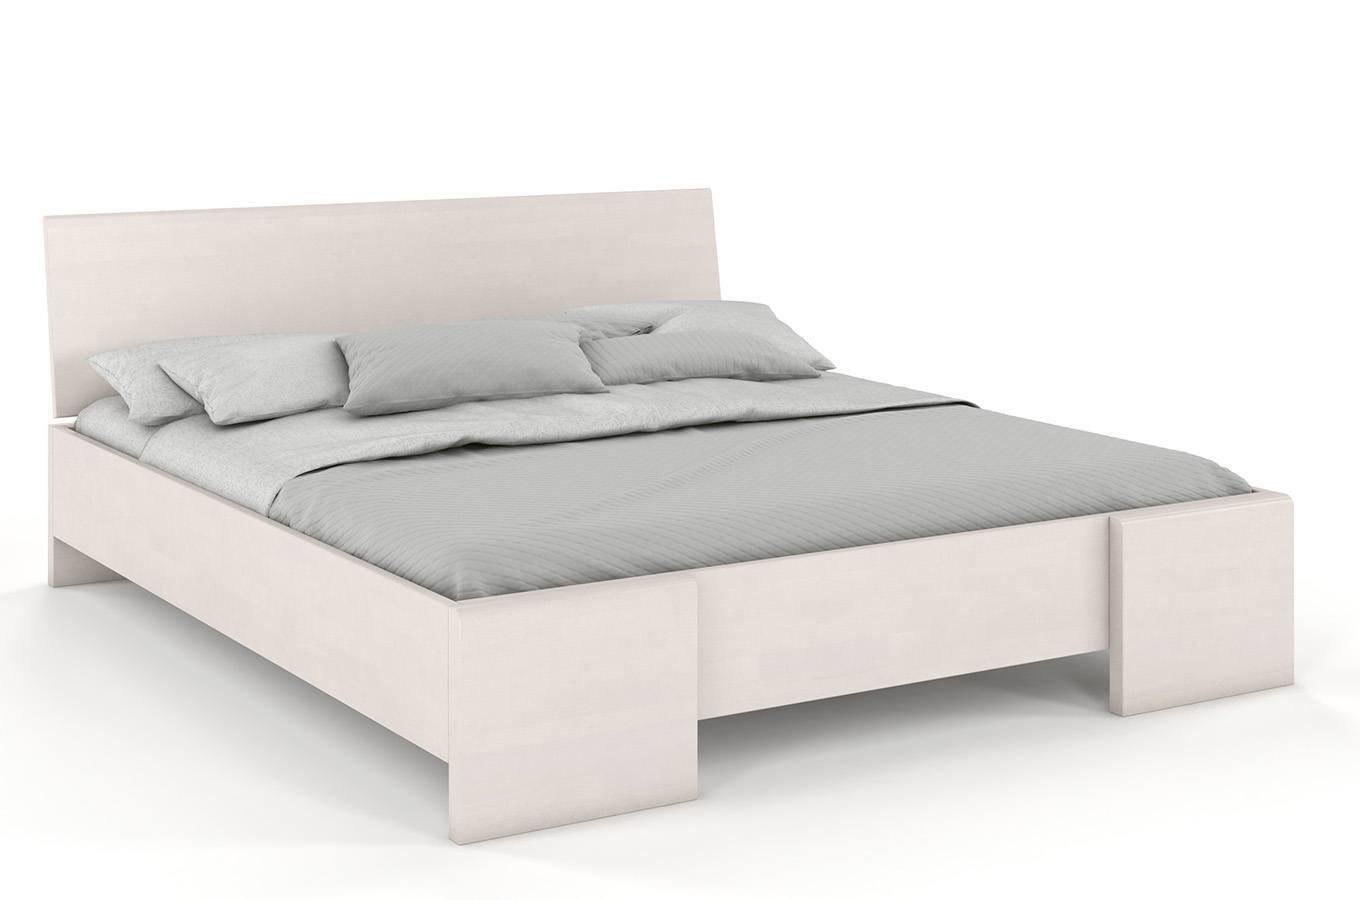 Łóżko drewniane bukowe Visby HESSLER High & LONG (długość + 20 cm) / 140x220 cm, kolor biały